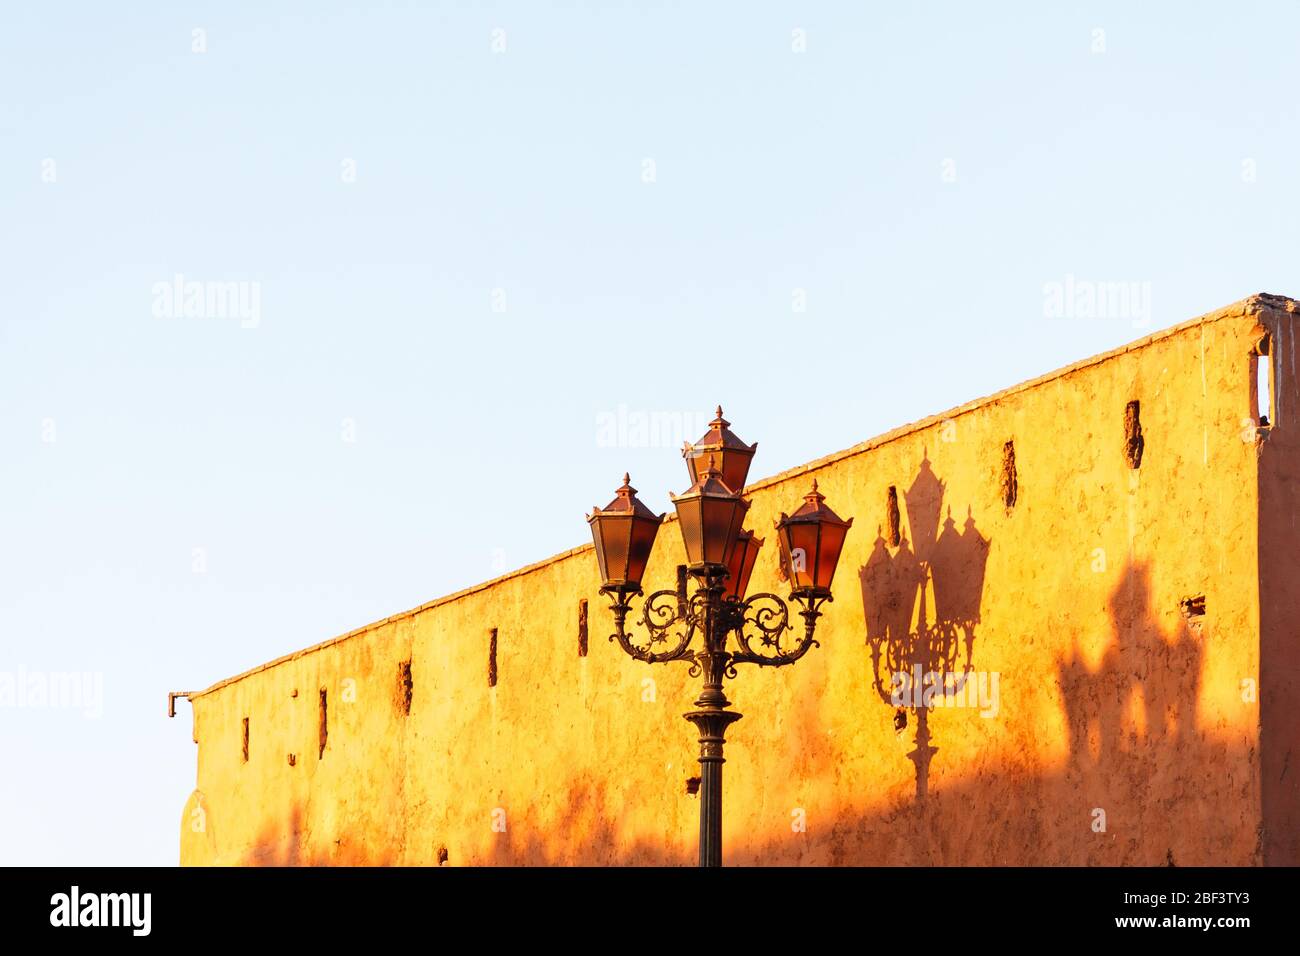 Poste ornamentado que refleja la sombra en una pared en Marrakech, Marruecos Foto de stock